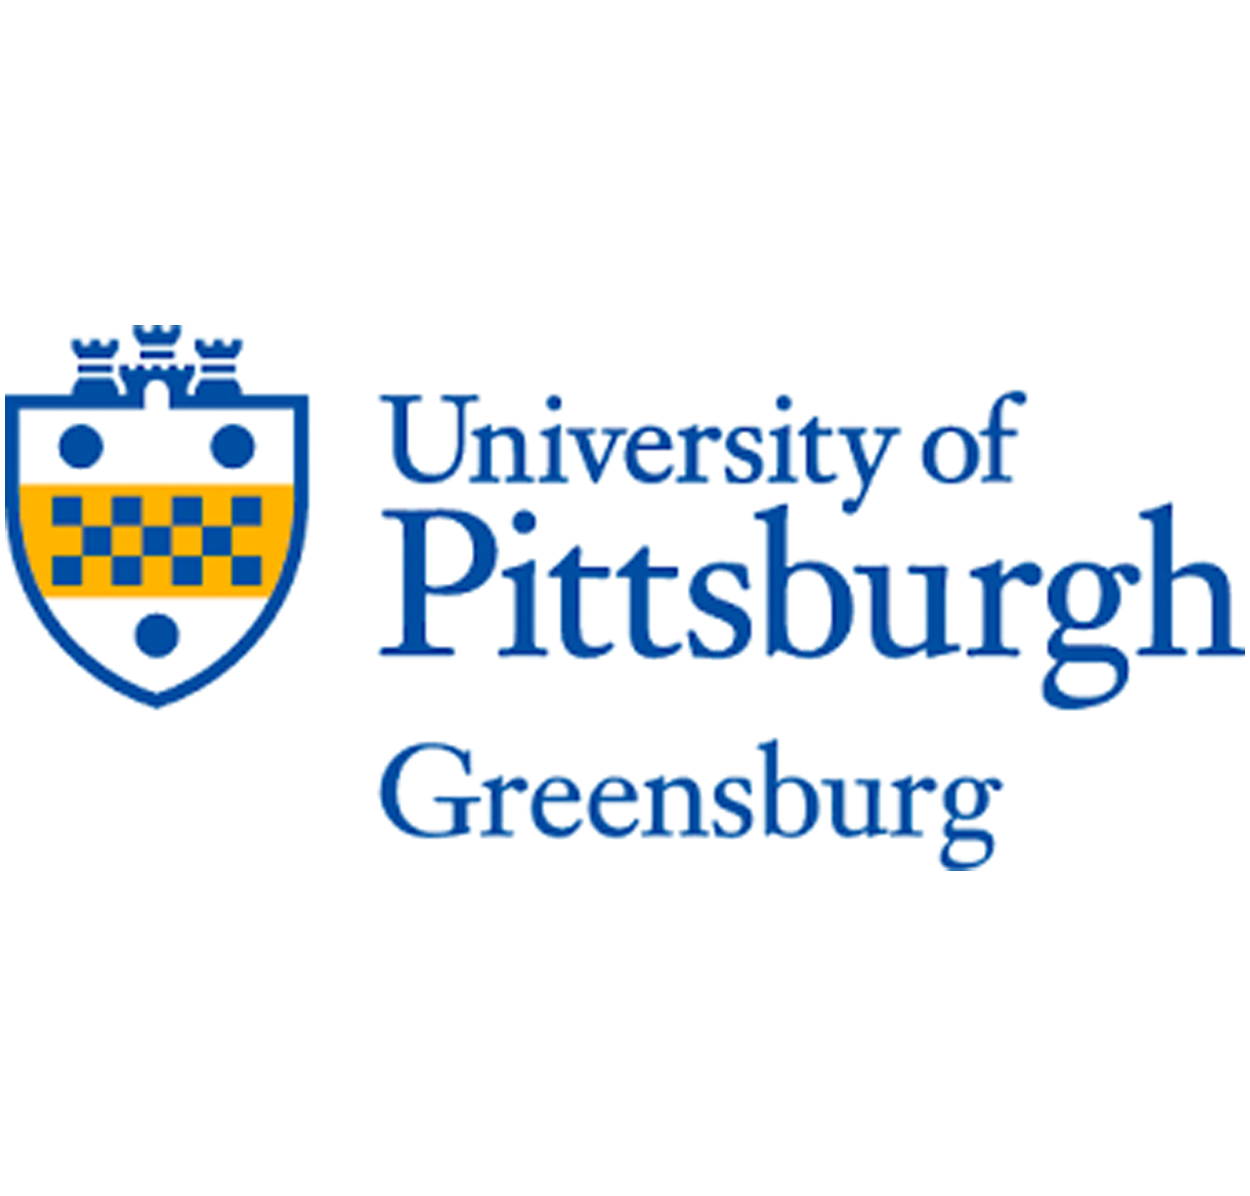 University of Pittsburgh Greensburg